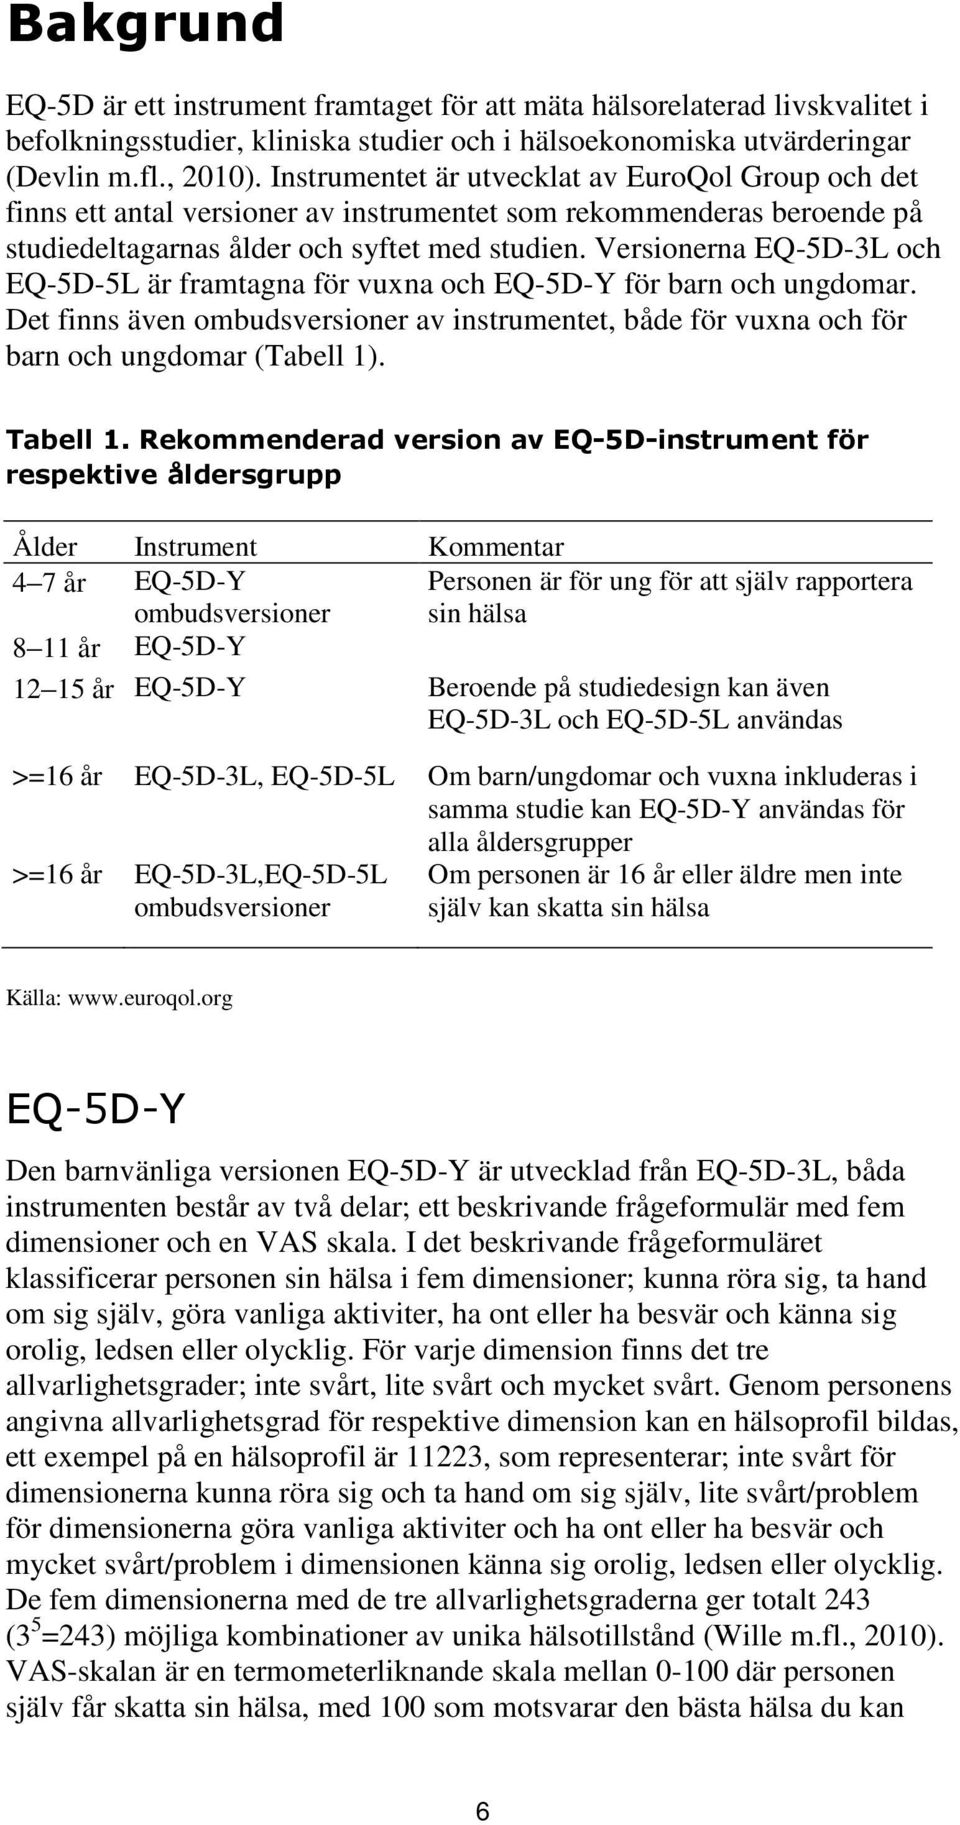 Versionerna EQ-5D-3L och EQ-5D-5L är framtagna för vuxna och EQ-5D-Y för barn och ungdomar. Det finns även ombudsversioner av instrumentet, både för vuxna och för barn och ungdomar (Tabell 1).